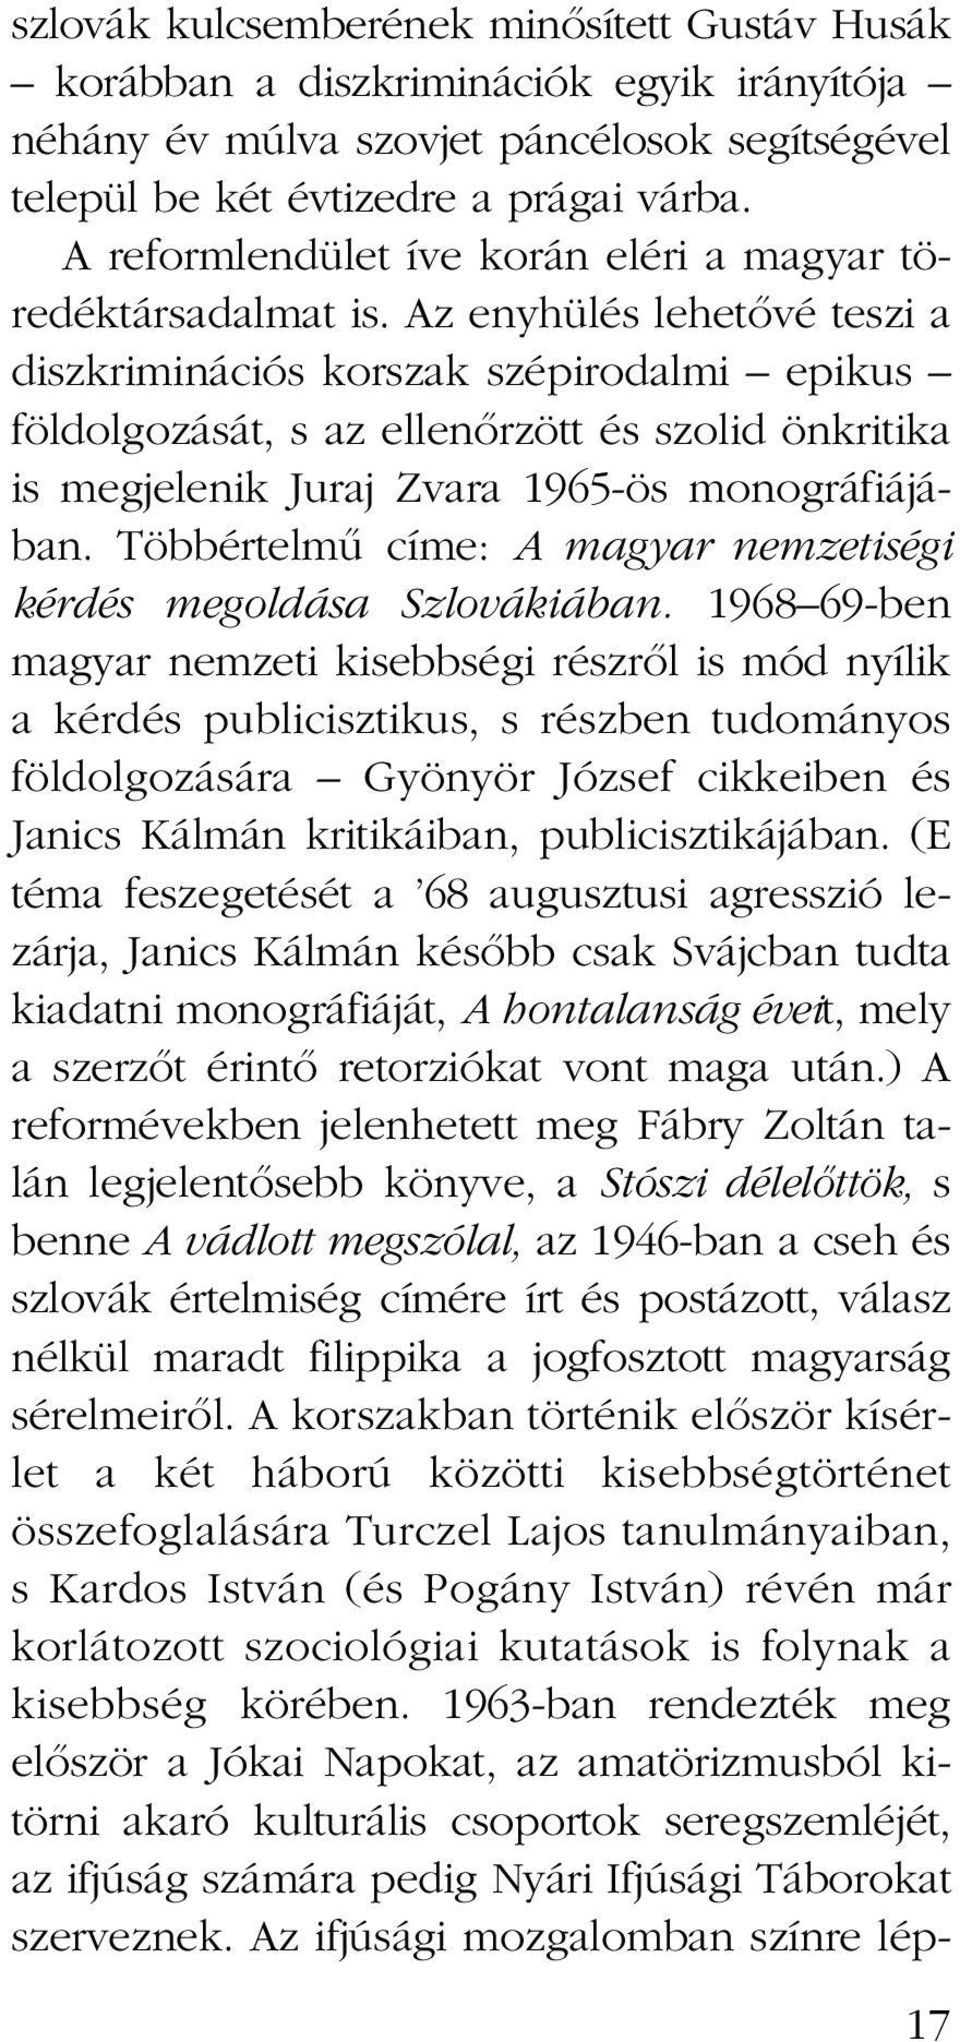 Az enyhülés lehetœvé teszi a diszkriminációs korszak szépirodalmi epikus földolgozását, s az ellenœrzött és szolid önkritika is megjelenik Juraj Zvara 1965-ös monográfiájában.